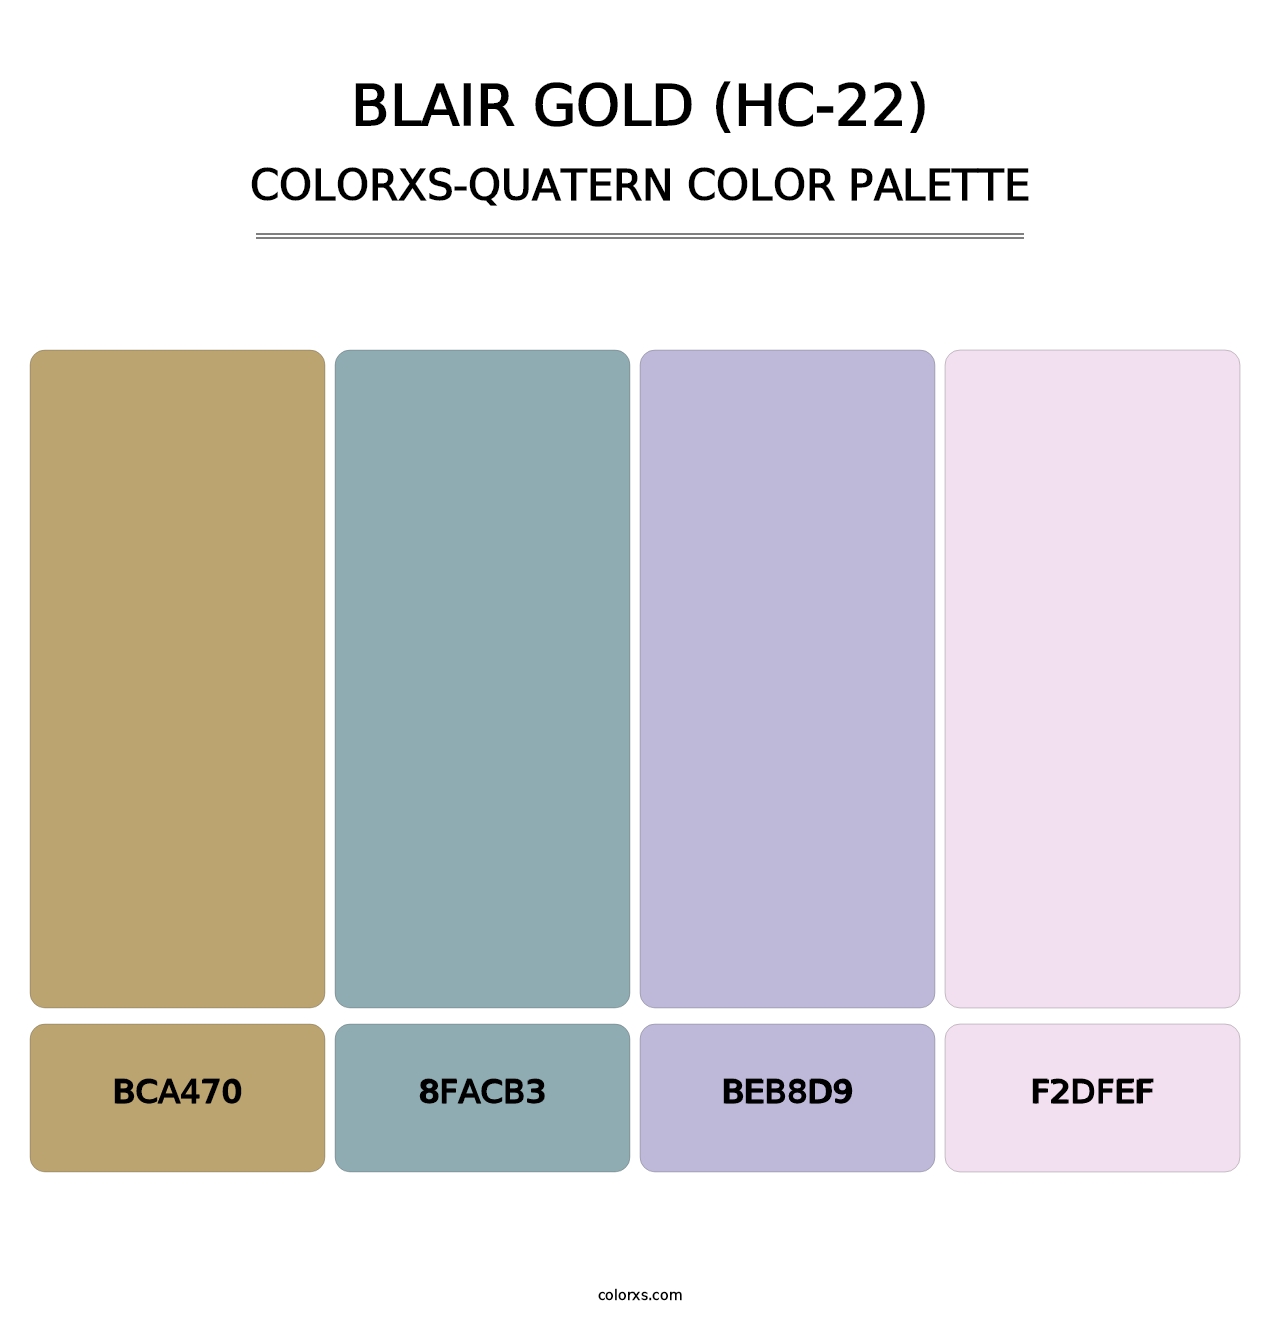 Blair Gold (HC-22) - Colorxs Quatern Palette